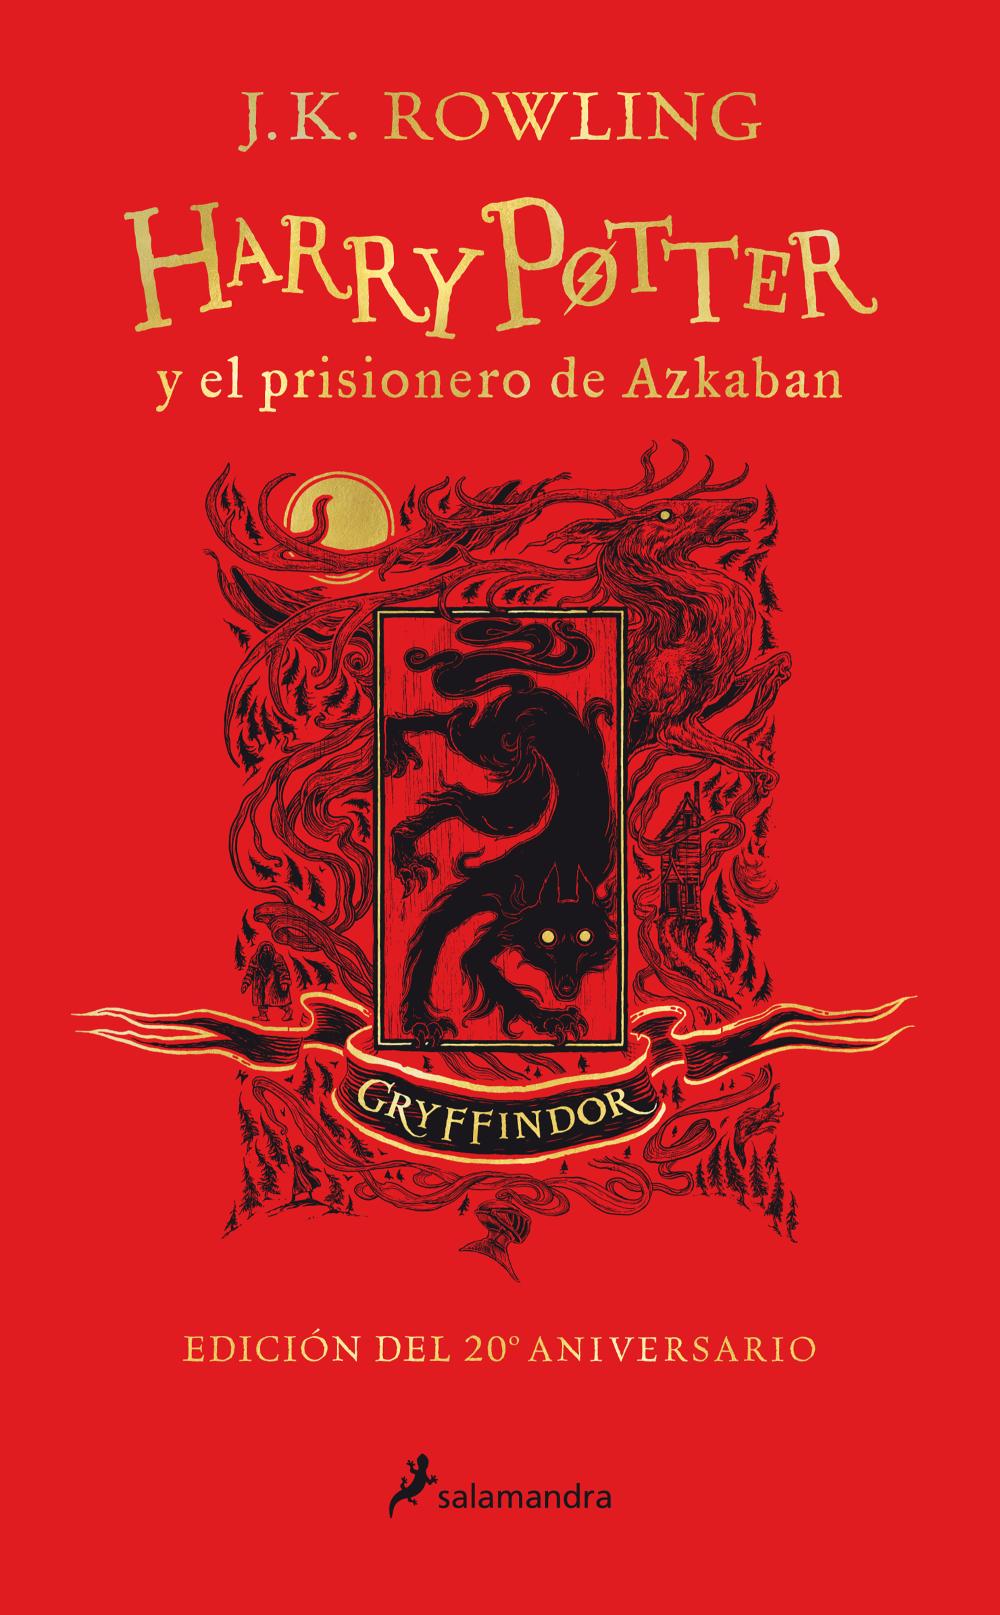 Harry Potter y el prisionero de Azkaban (edición Gryffindor del 20º aniversario) (Harry Potter 3)